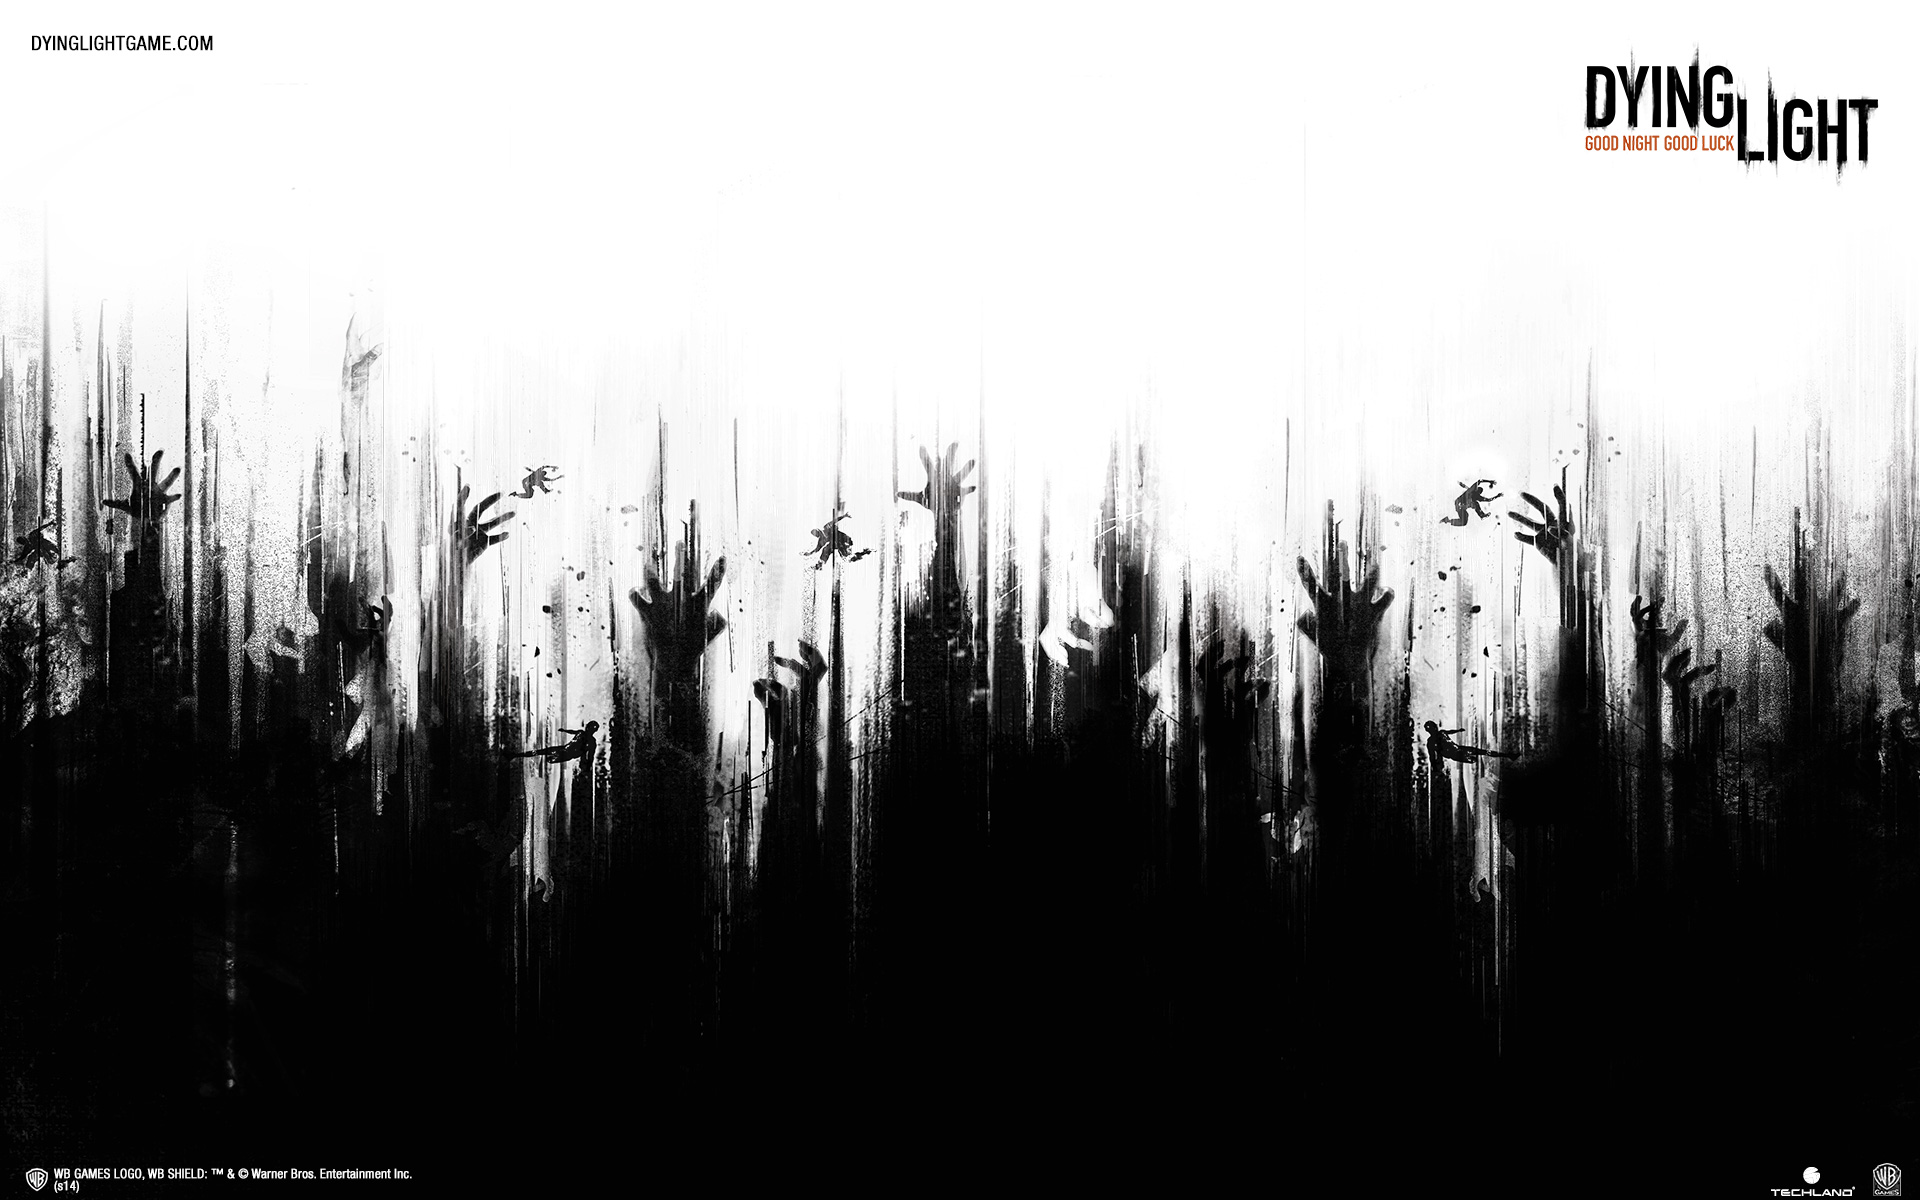 fond d'écran de lumière mourante,noir et blanc,texte,photographie monochrome,arbre,famille d'herbe